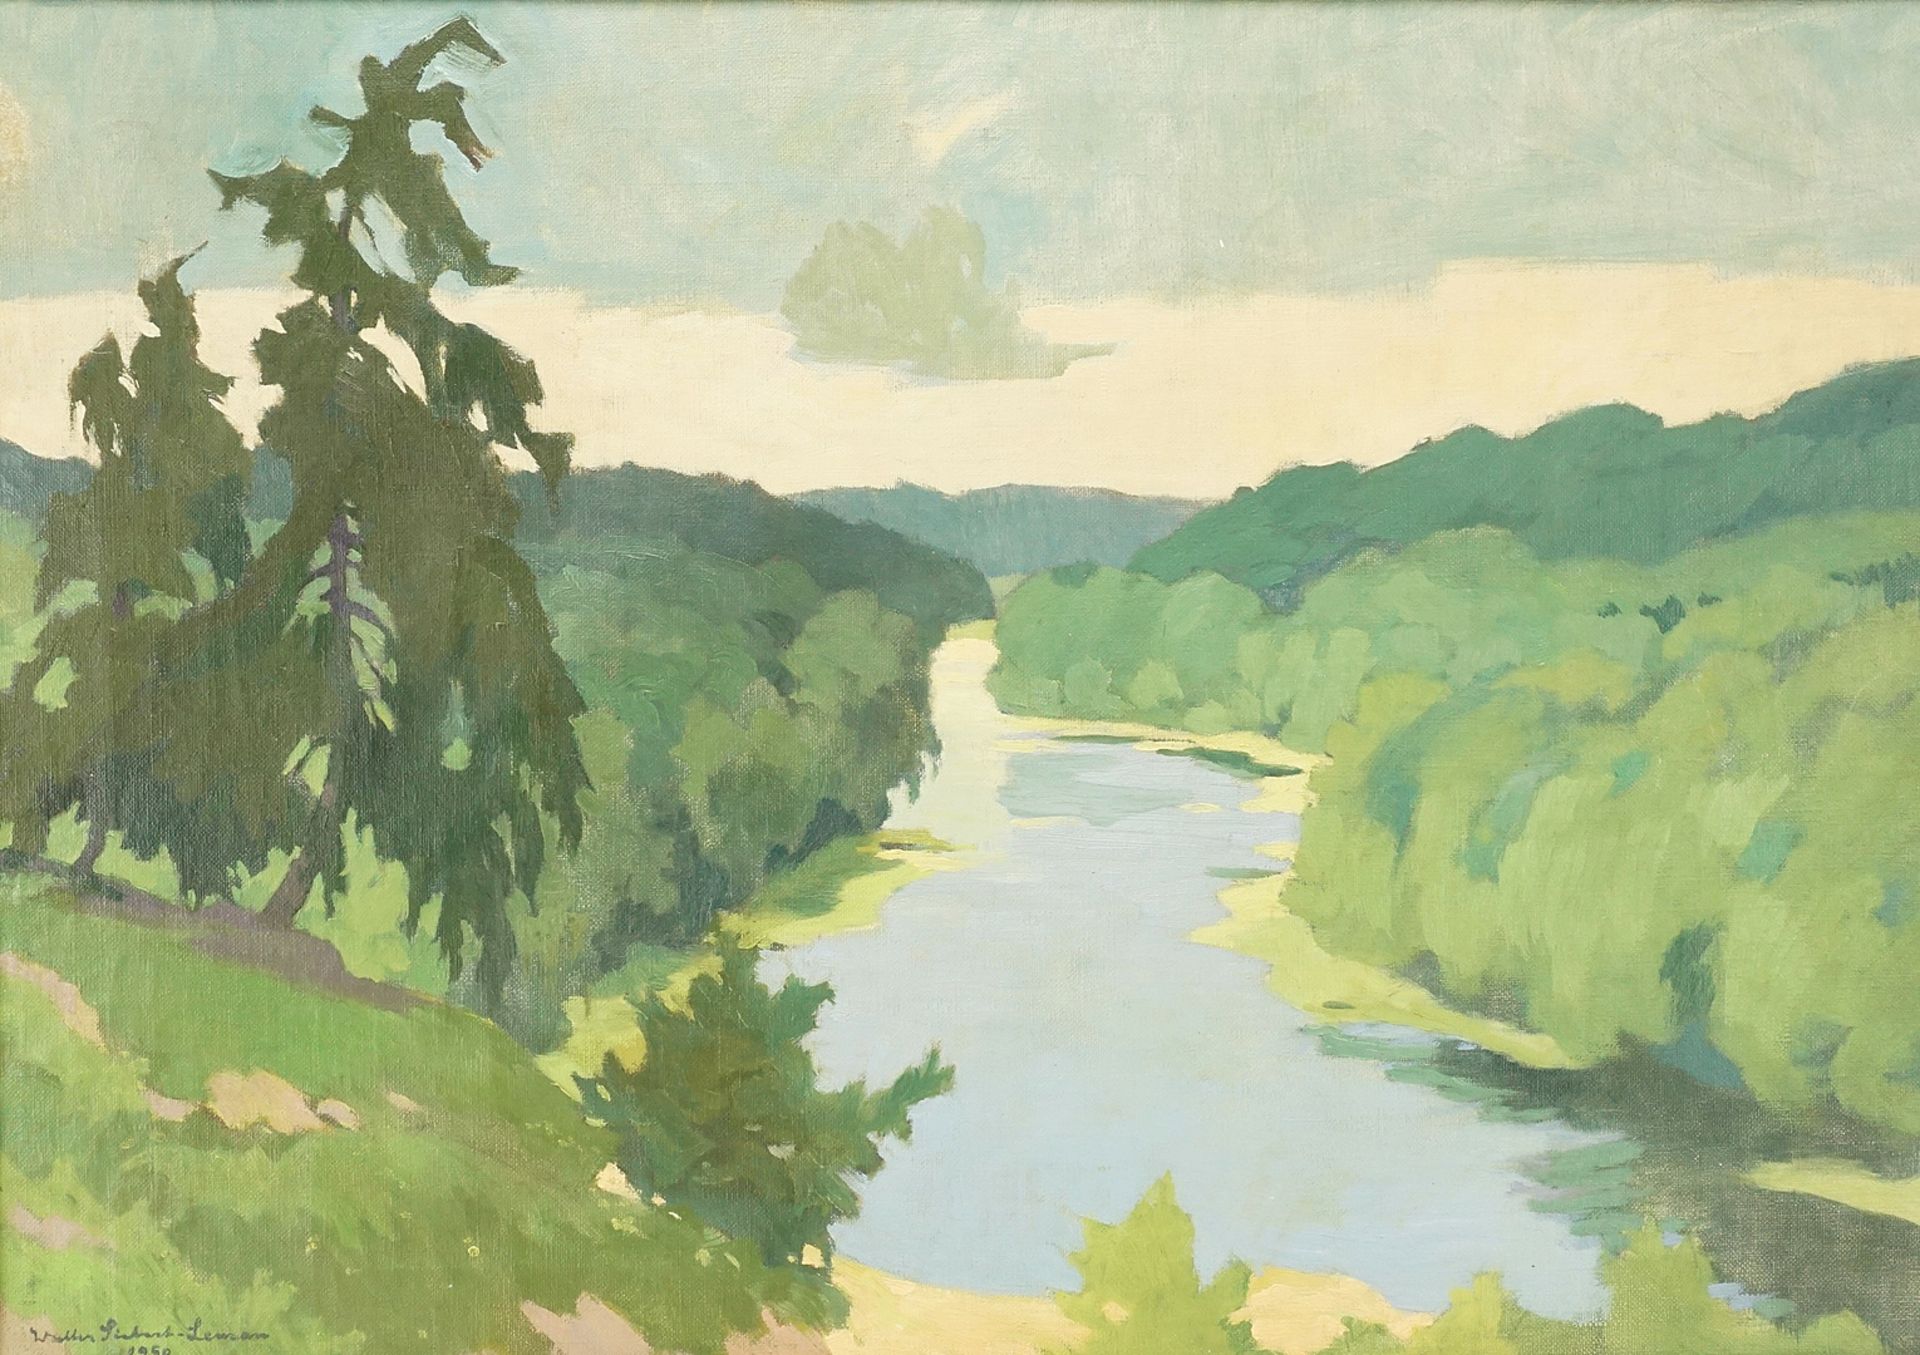 Walter Siebert-Leman (1893-1971), View of a forest lake